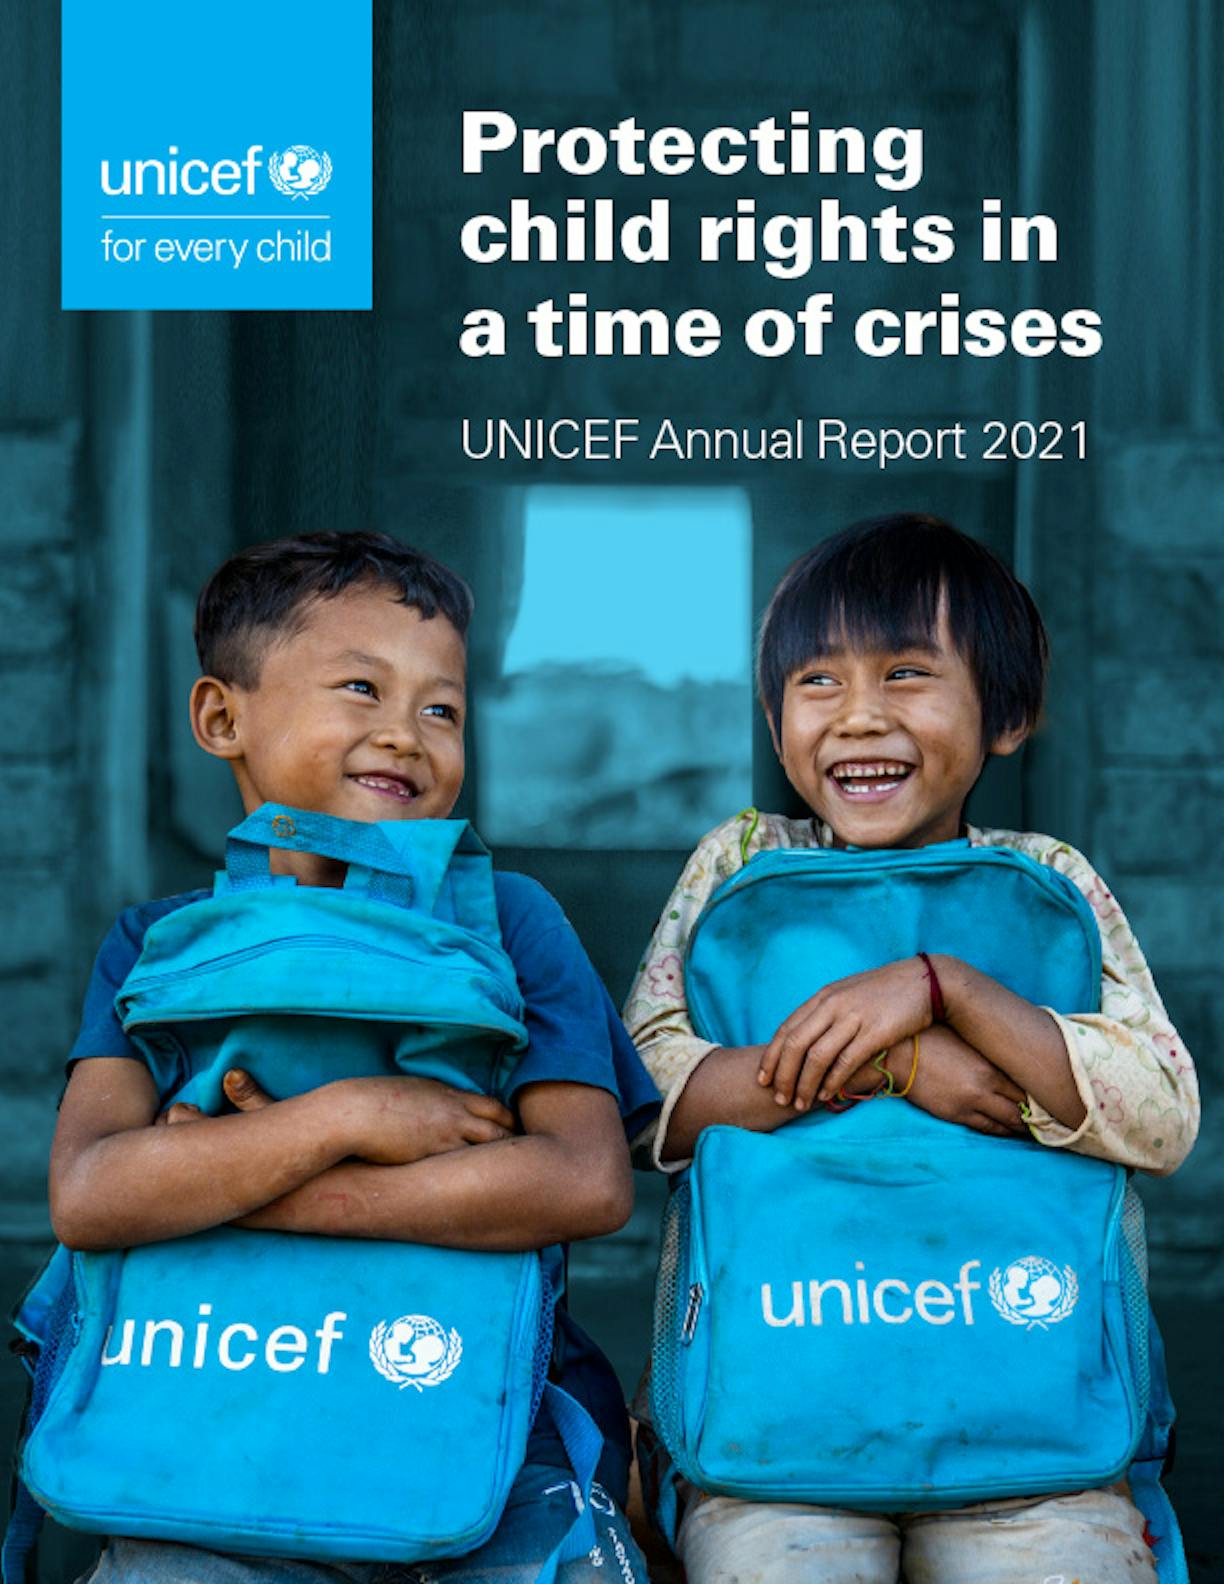 UNICEF Annual Report 2021 copertina